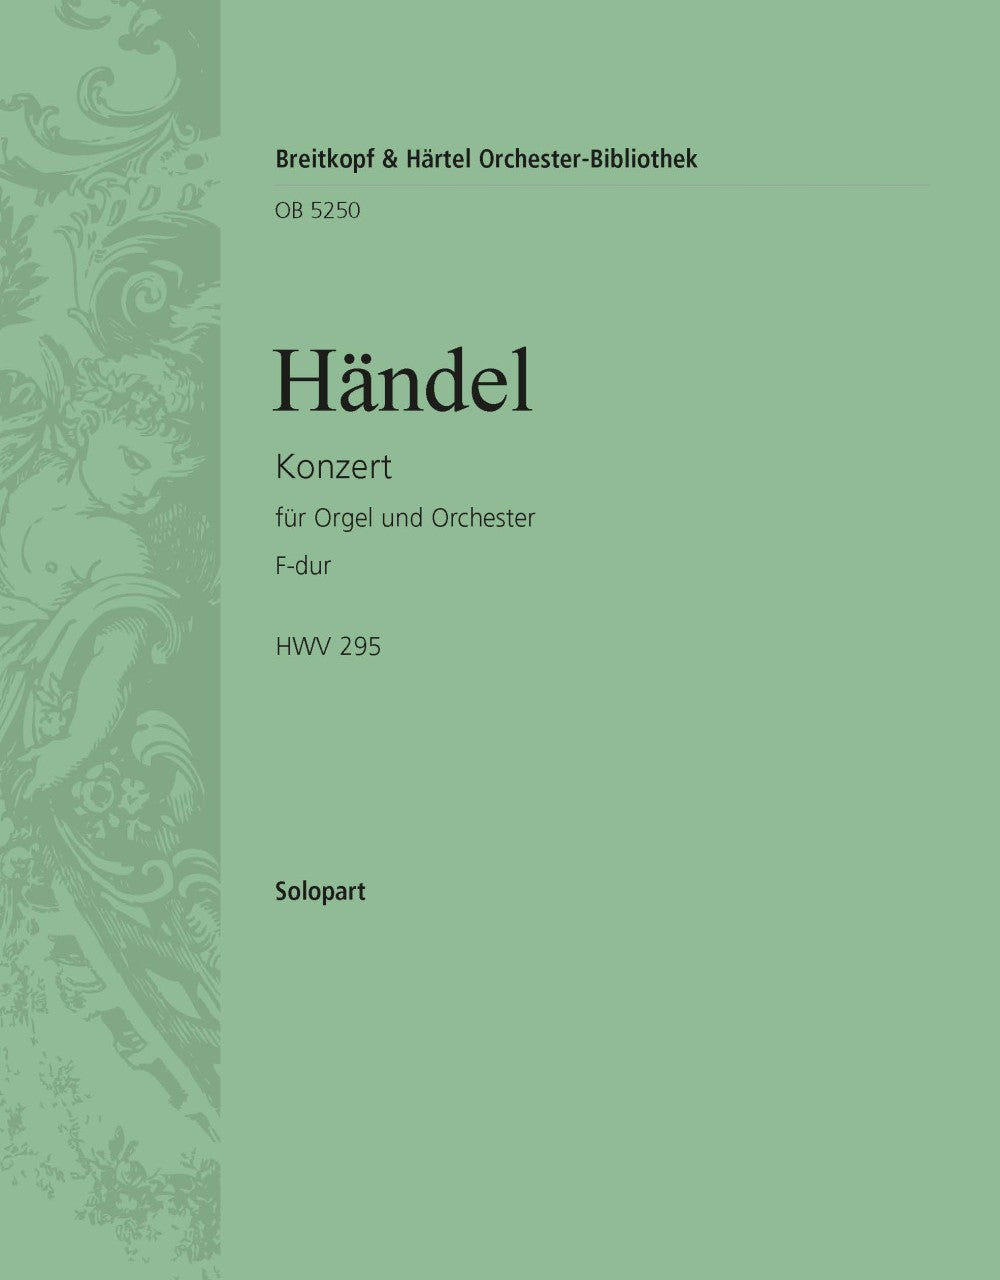 Handel: Organ Concerto No. 13 in F Major, HWV 295